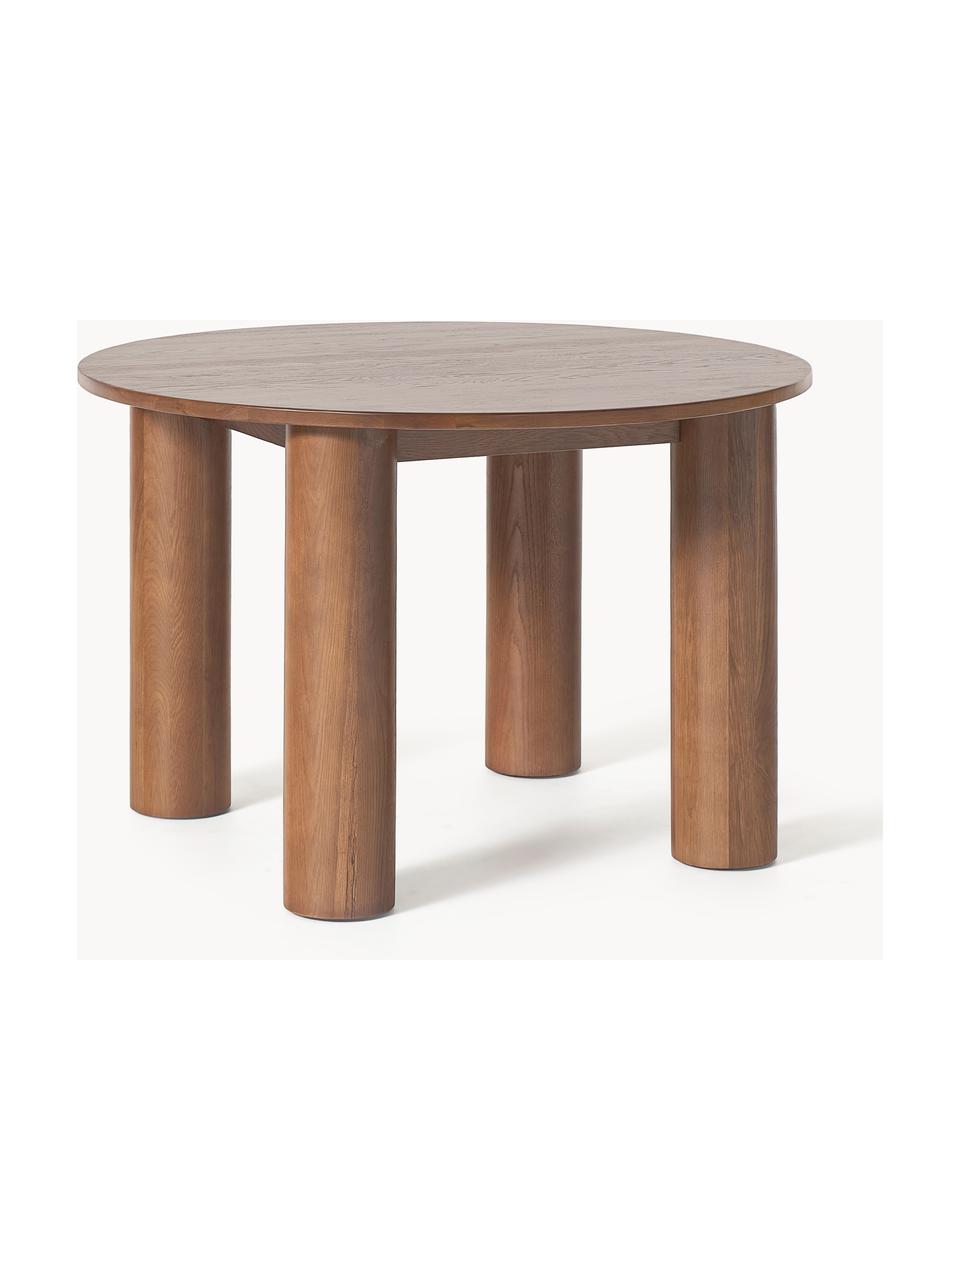 Okrúhly stôl z dubového dreva Ohana, Ø 120 cm, Masívne dubové drevo, ošetrené olejom
Tento produkt je vyrobený z trvalo udržateľného dreva s certifikátom FSC®., Dubové drevo, hnedá ošetrené olejom, Ø 120 cm